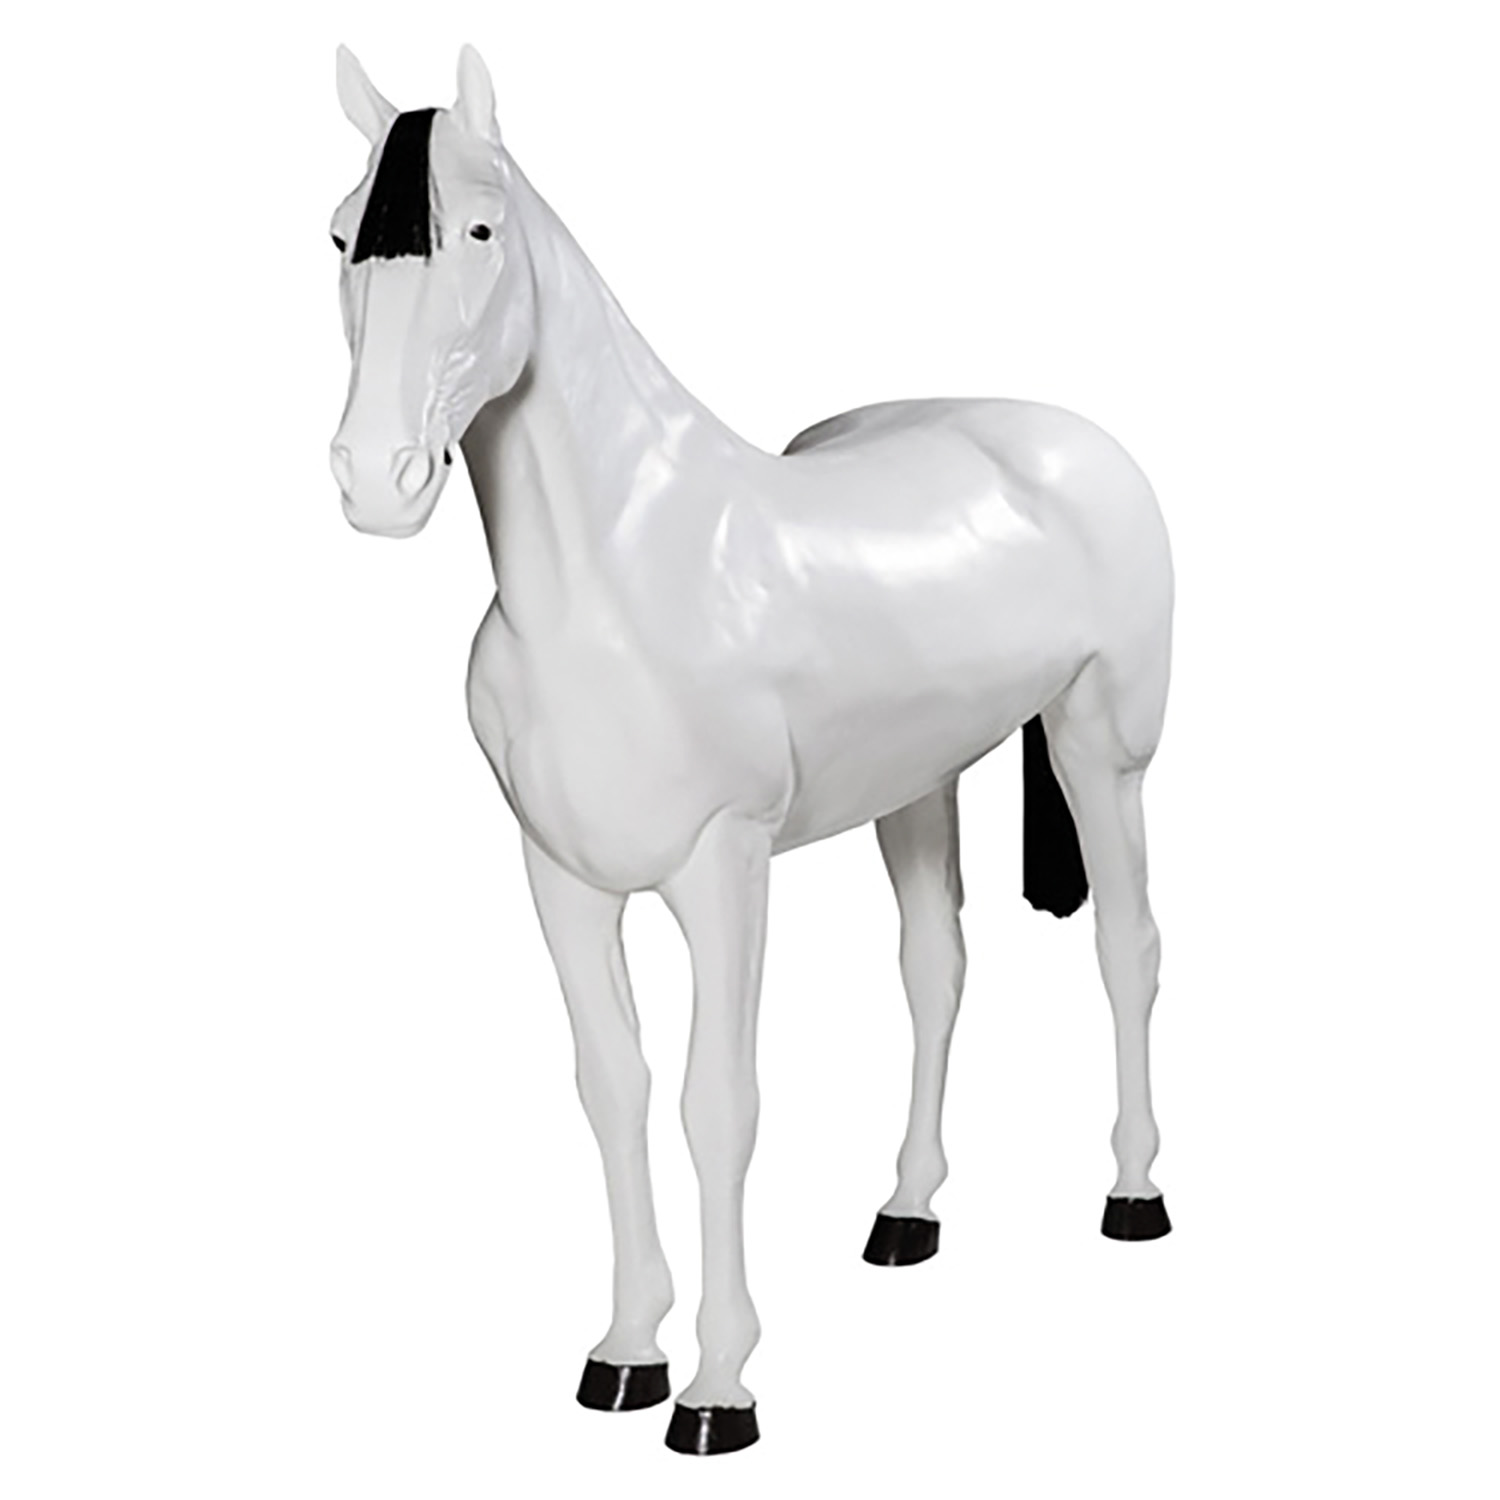 STUBBS DISPLAY HORSE LIFE-SIZE S112 WHITE